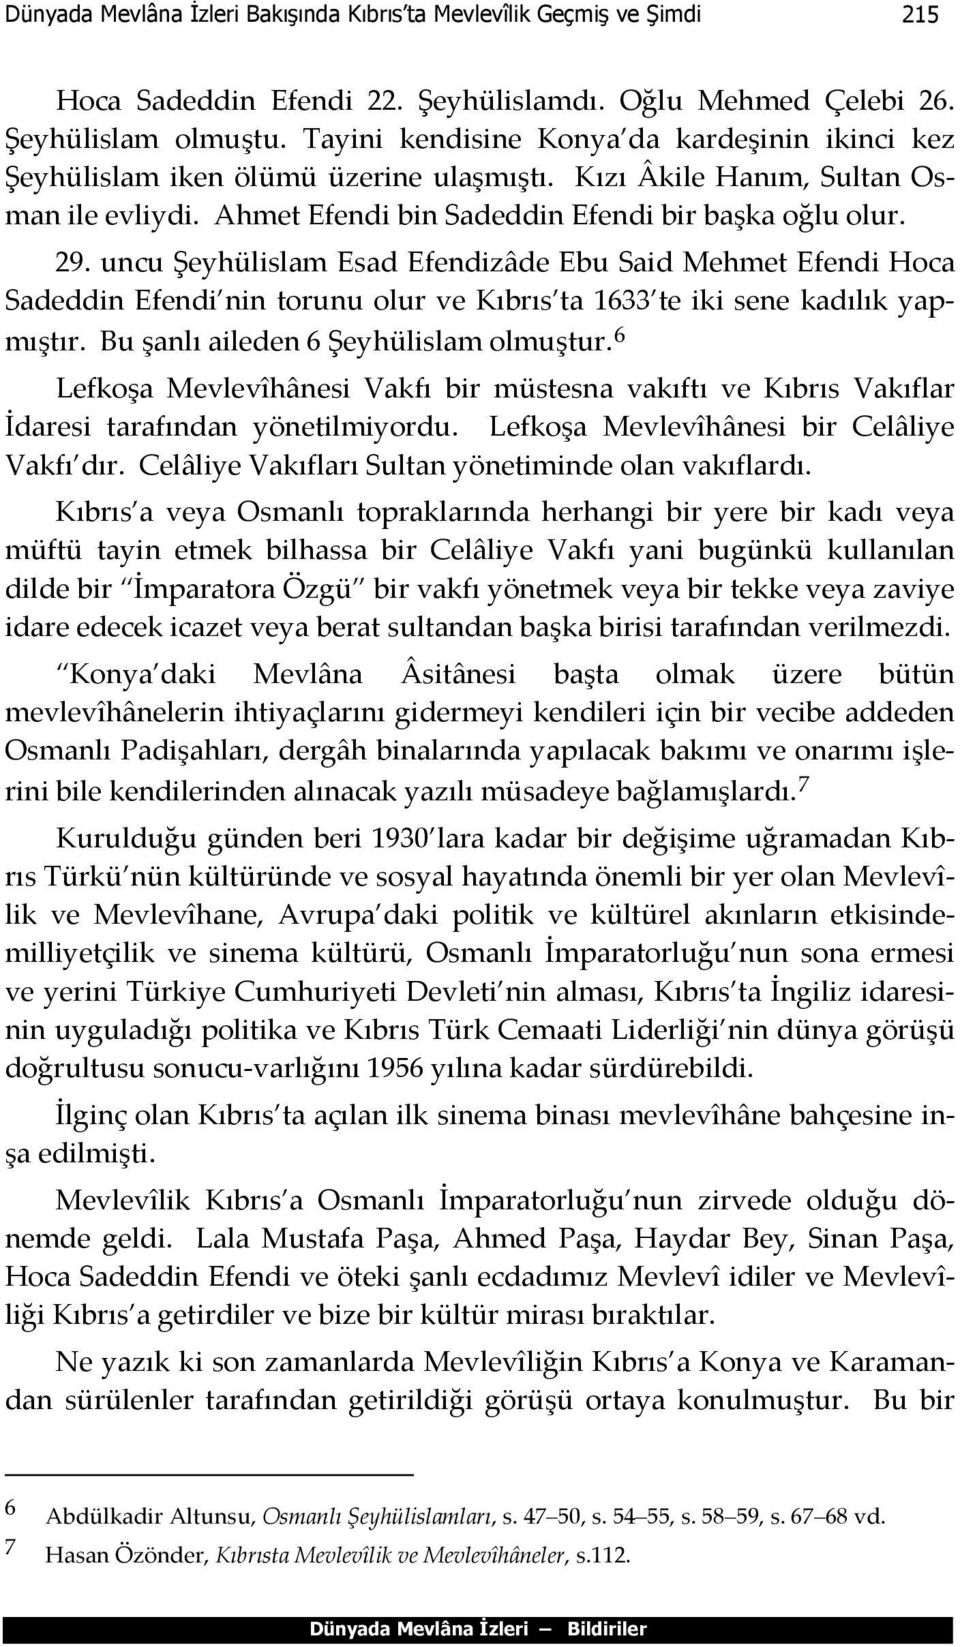 uncu Şeyhülislam Esad Efendizâde Ebu Said Mehmet Efendi Hoca Sadeddin Efendi nin torunu olur ve Kıbrıs ta 1633 te iki sene kadılık yapmıştır. Bu şanlı aileden 6 Şeyhülislam olmuştur.